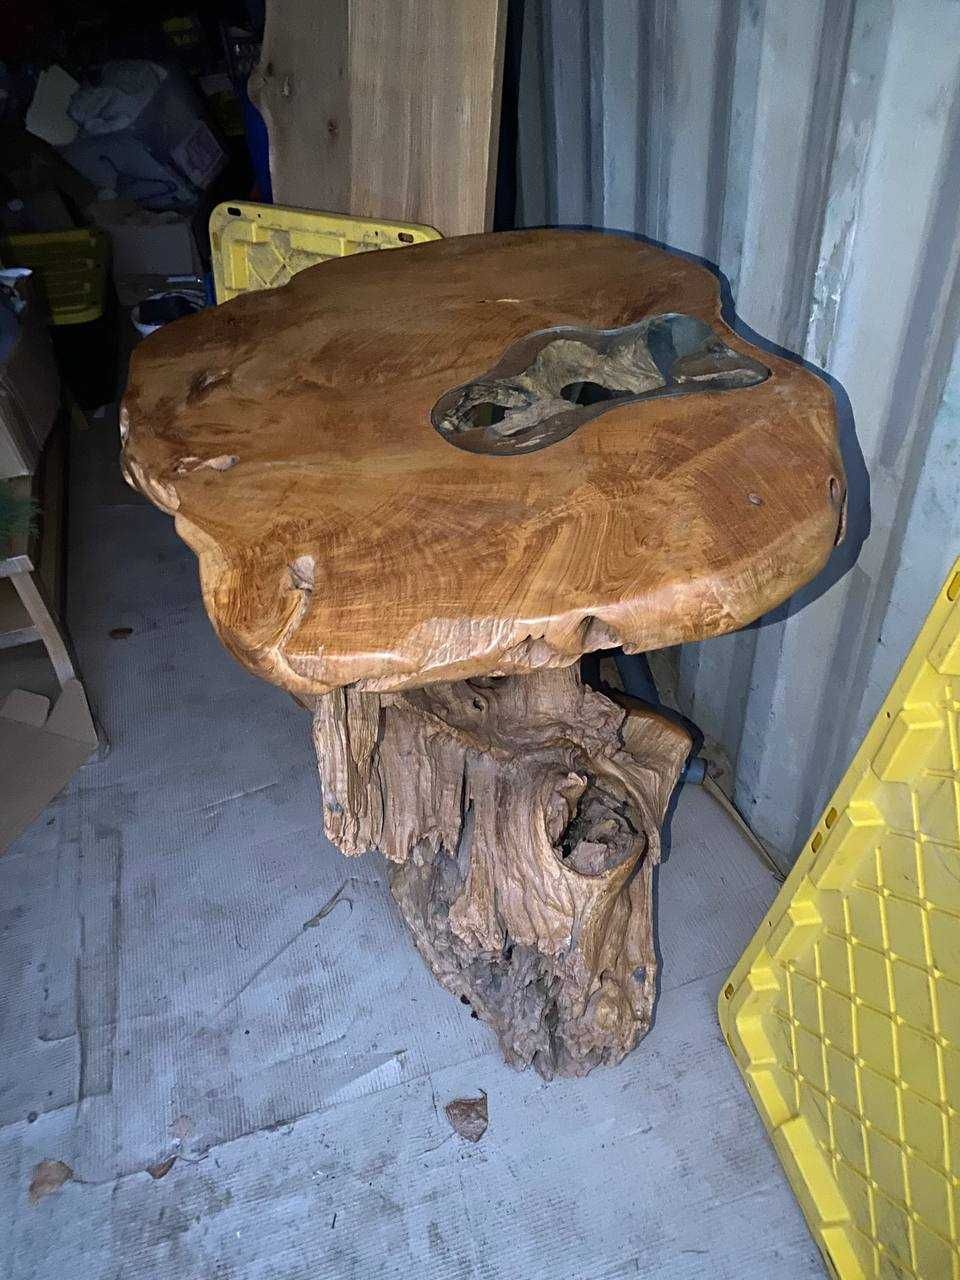 деревянный стол ручной работы